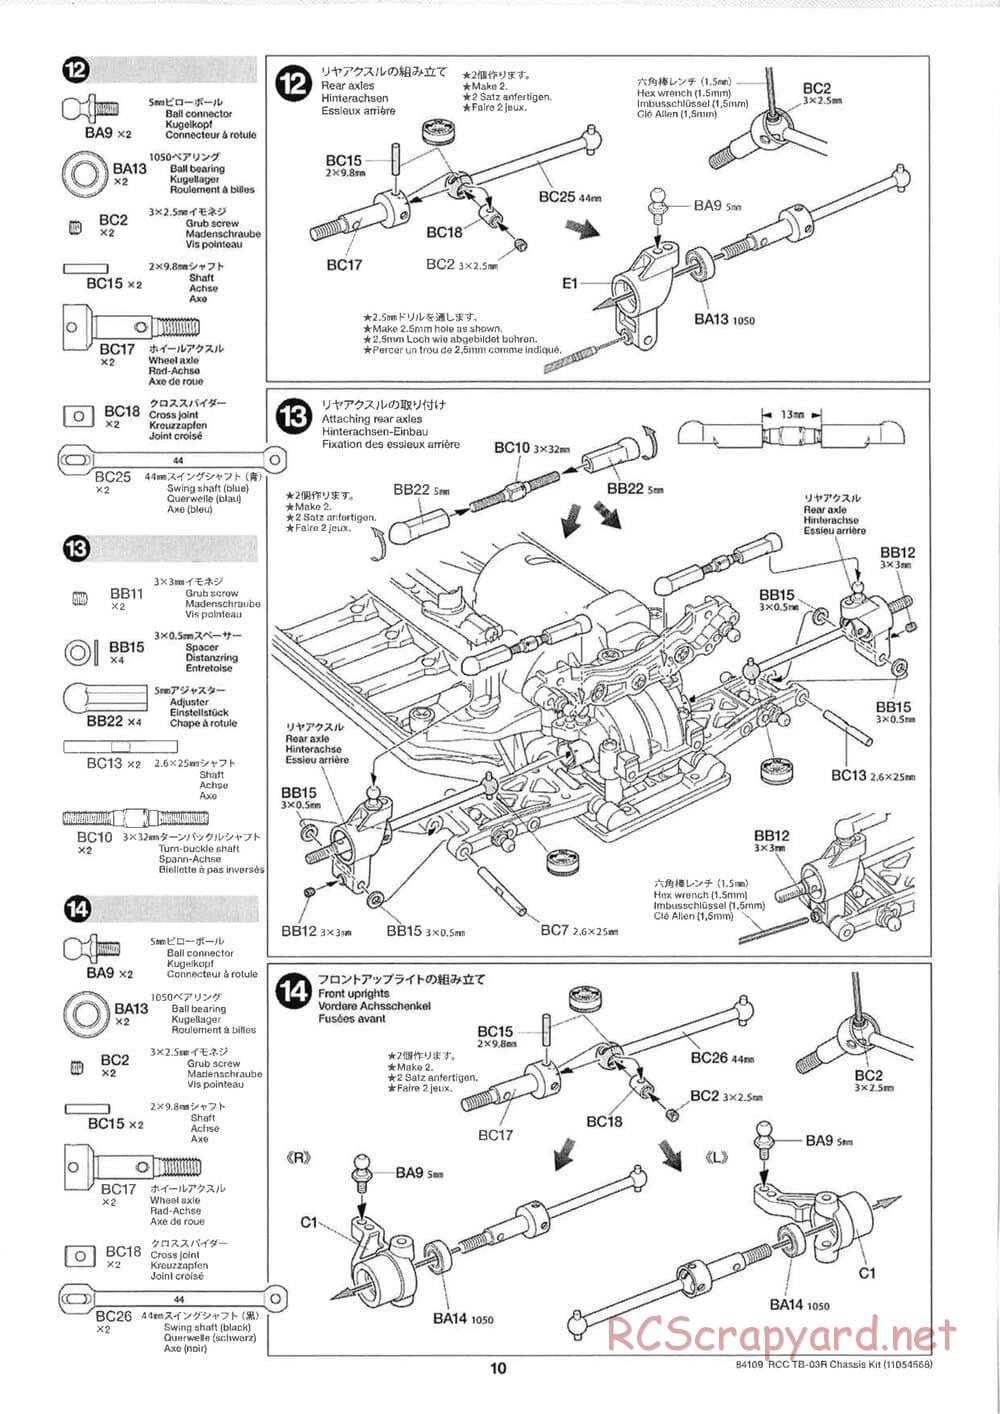 Tamiya - TB-03R Chassis - Manual - Page 10